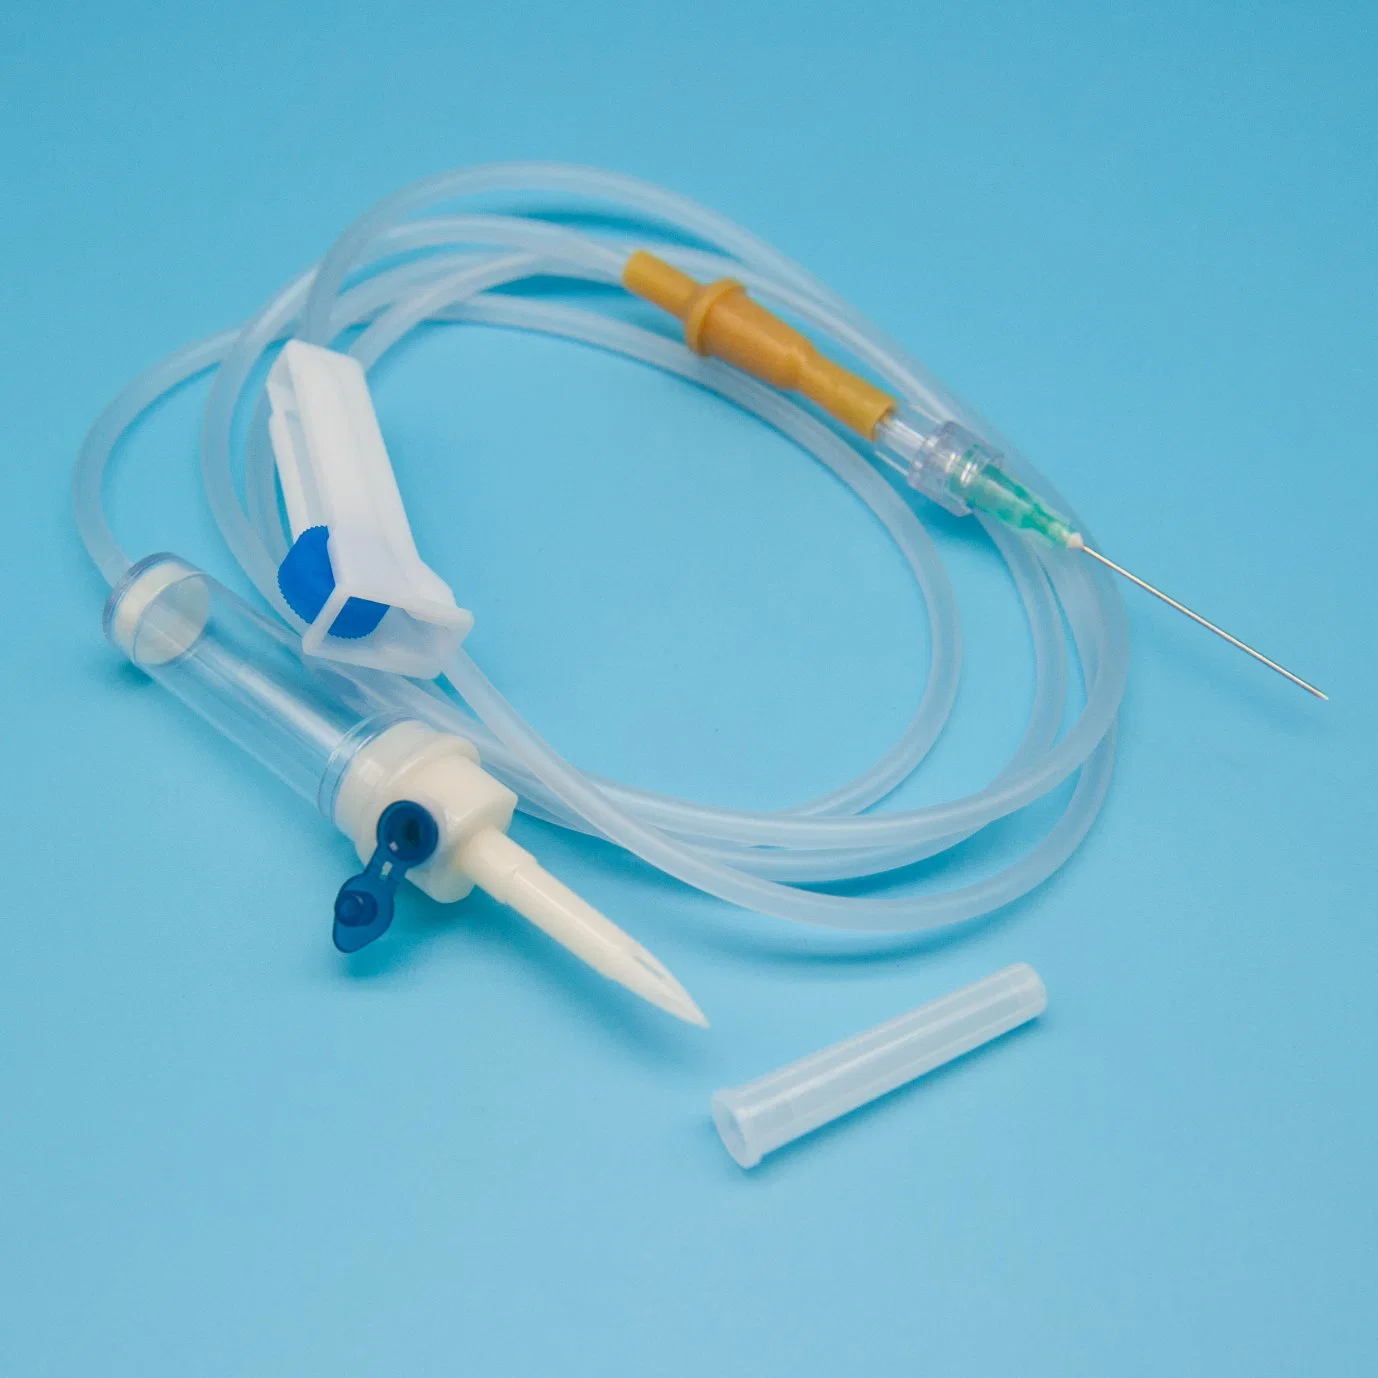 Sistema de infusión IV desechable para uso médico con Luer Lock Y. Conectar